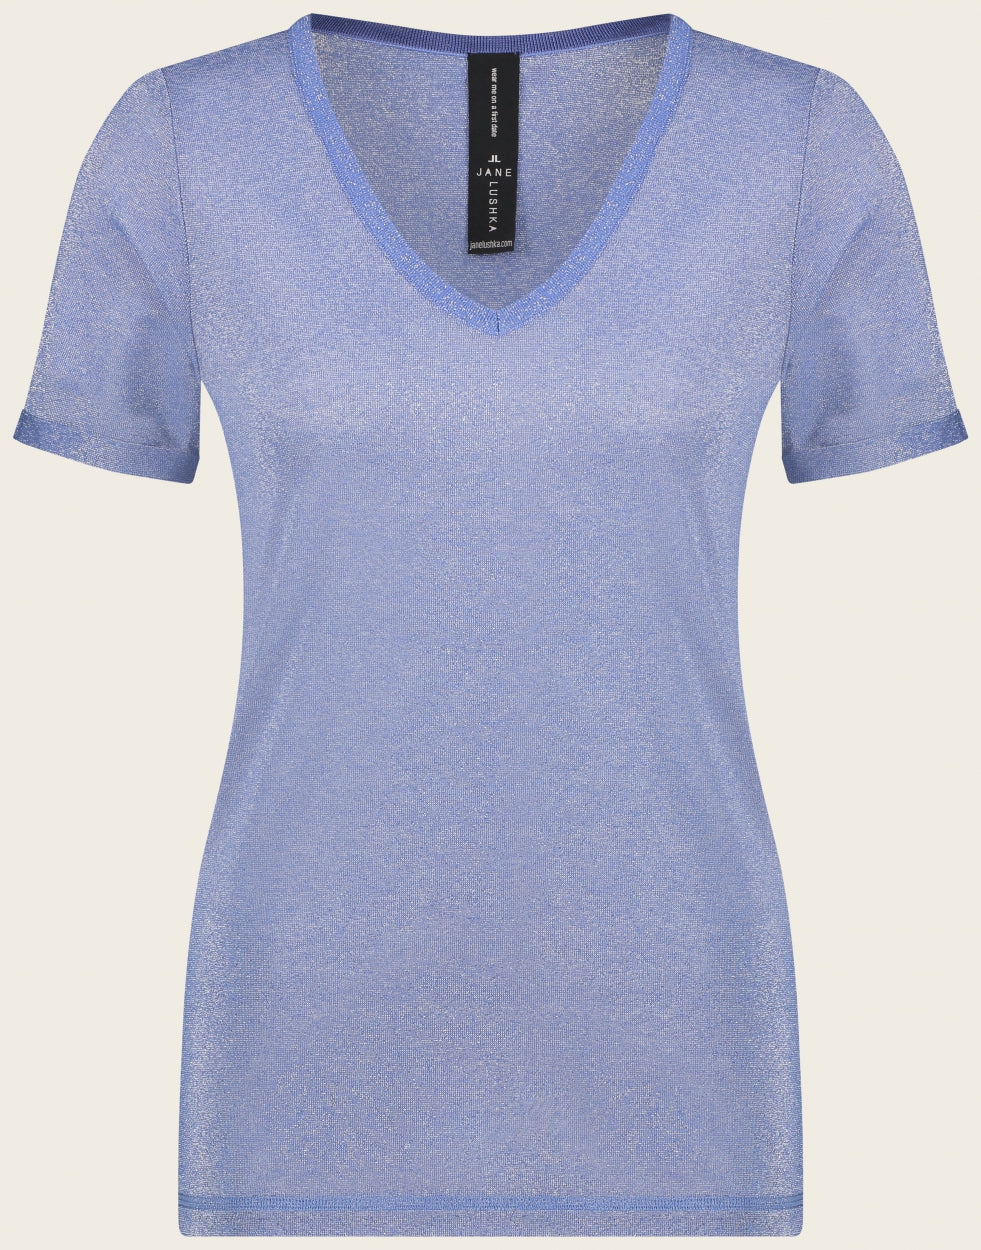 T shirt Leny | Blue denim